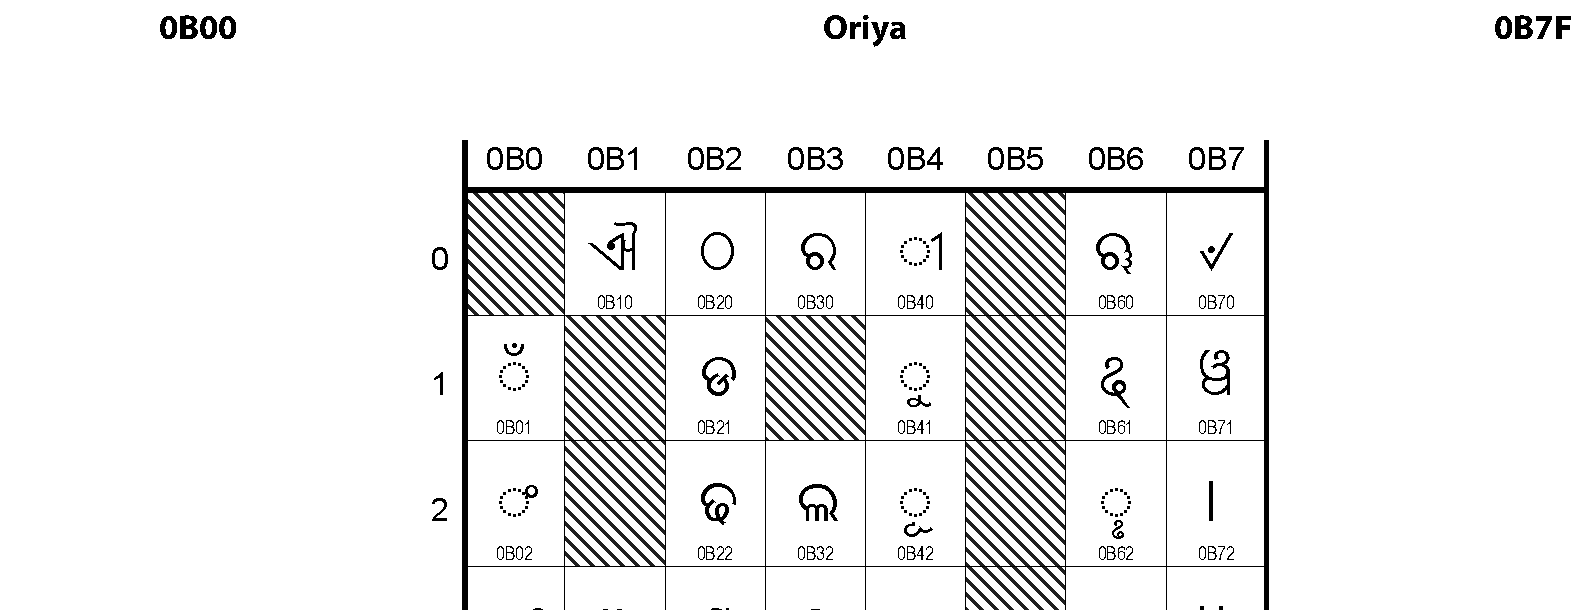 Unicode - Oriya